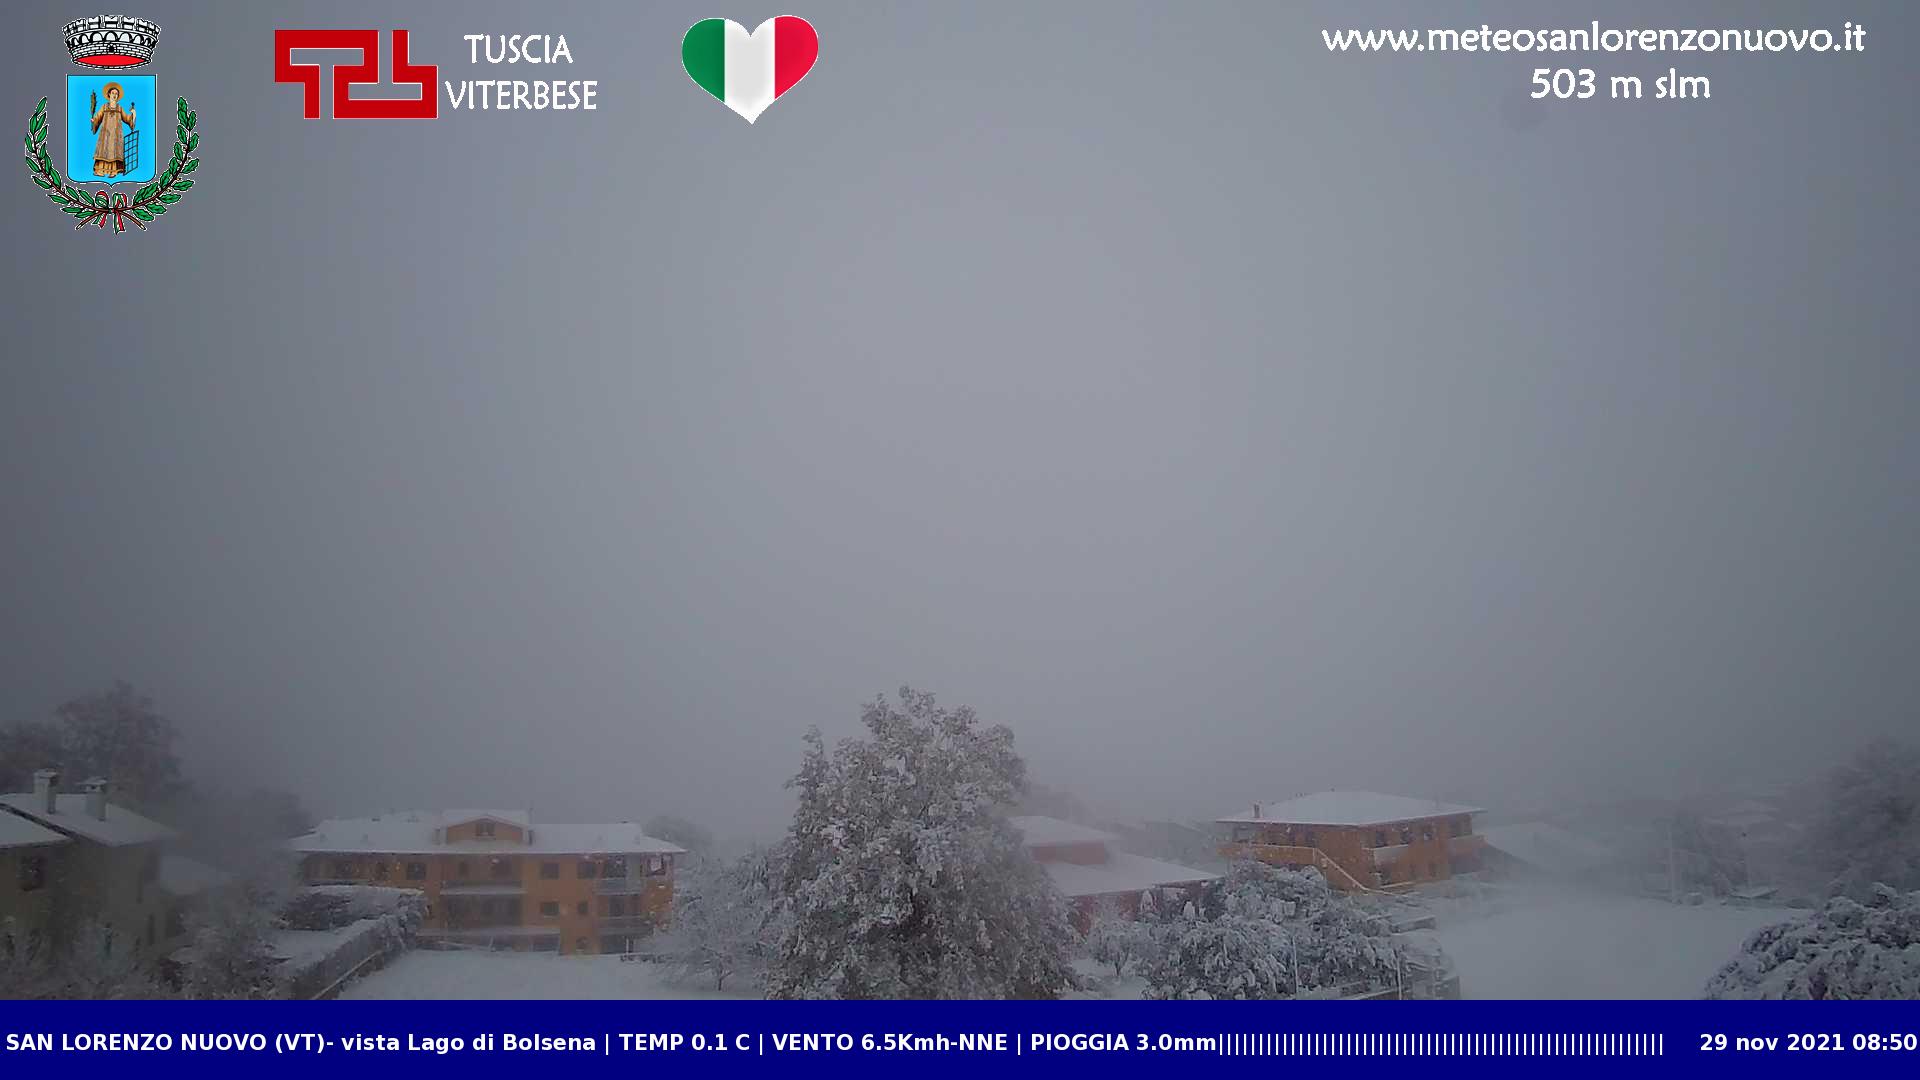 Webcam della neve su San Lorenzo Nuovo - Viterbo - Centro Meteo Italiano